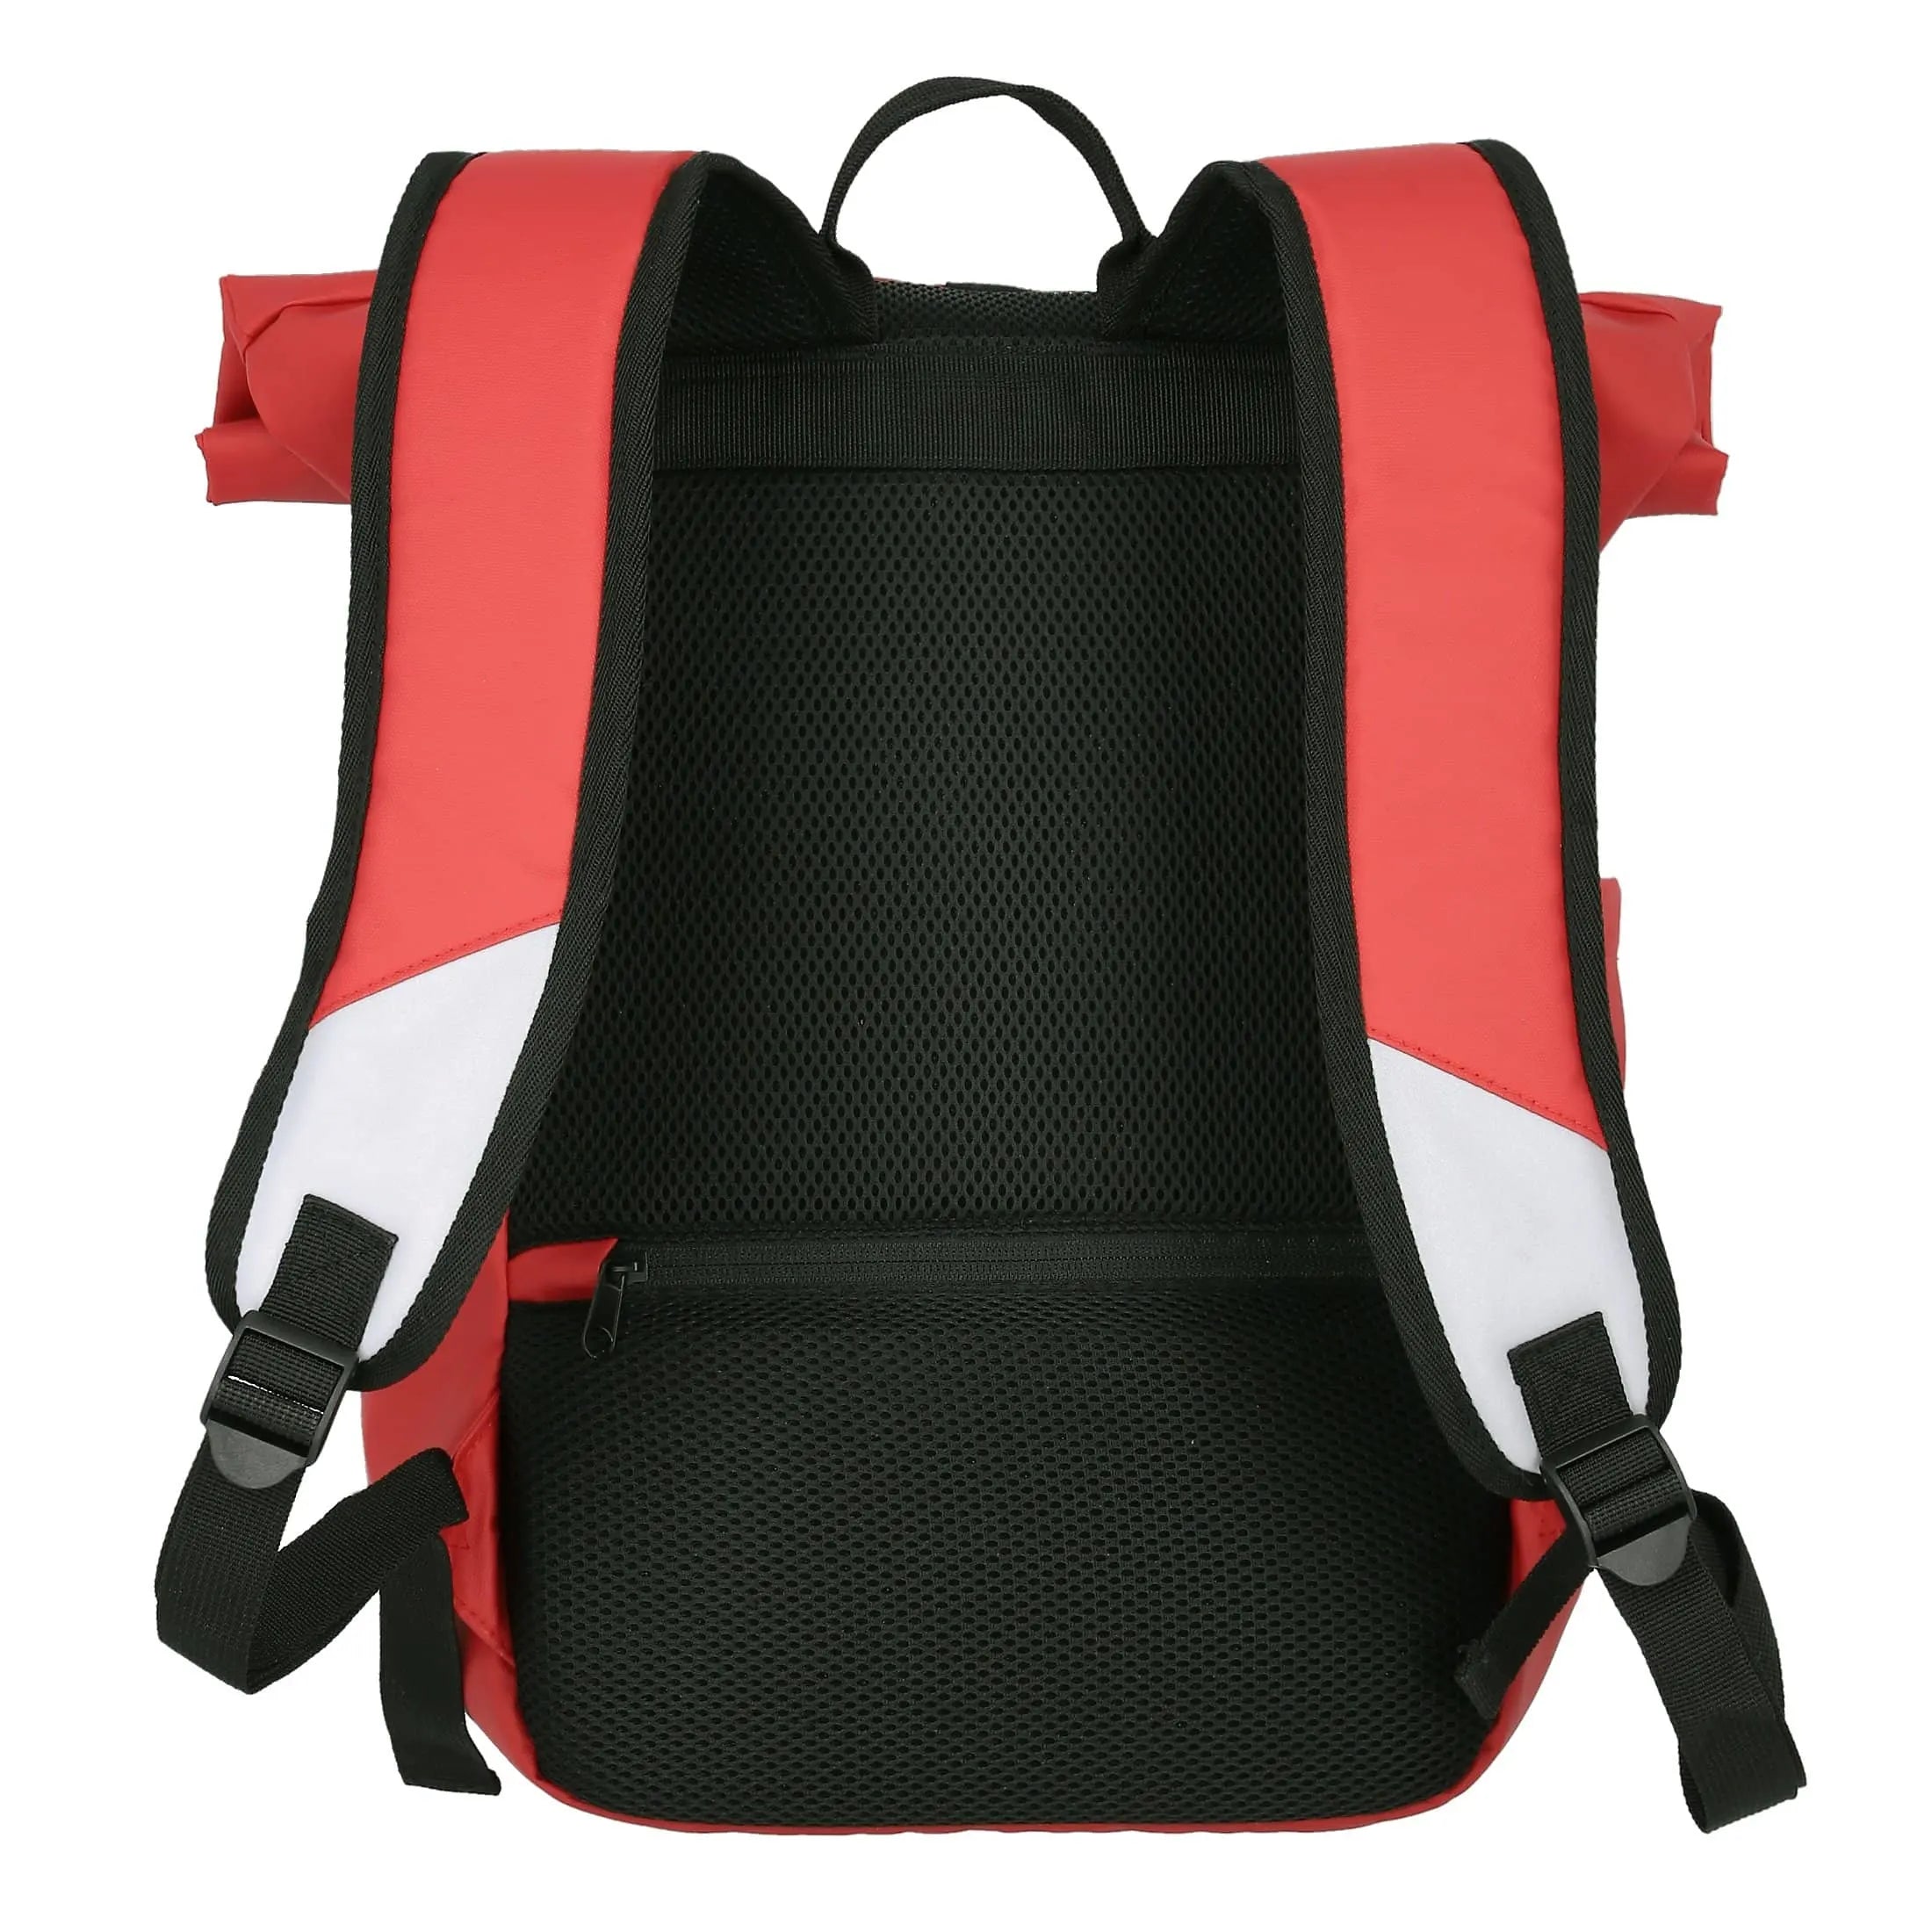 Bâche pour sac à dos enroulable Travelite Basics 48 cm - Rouge